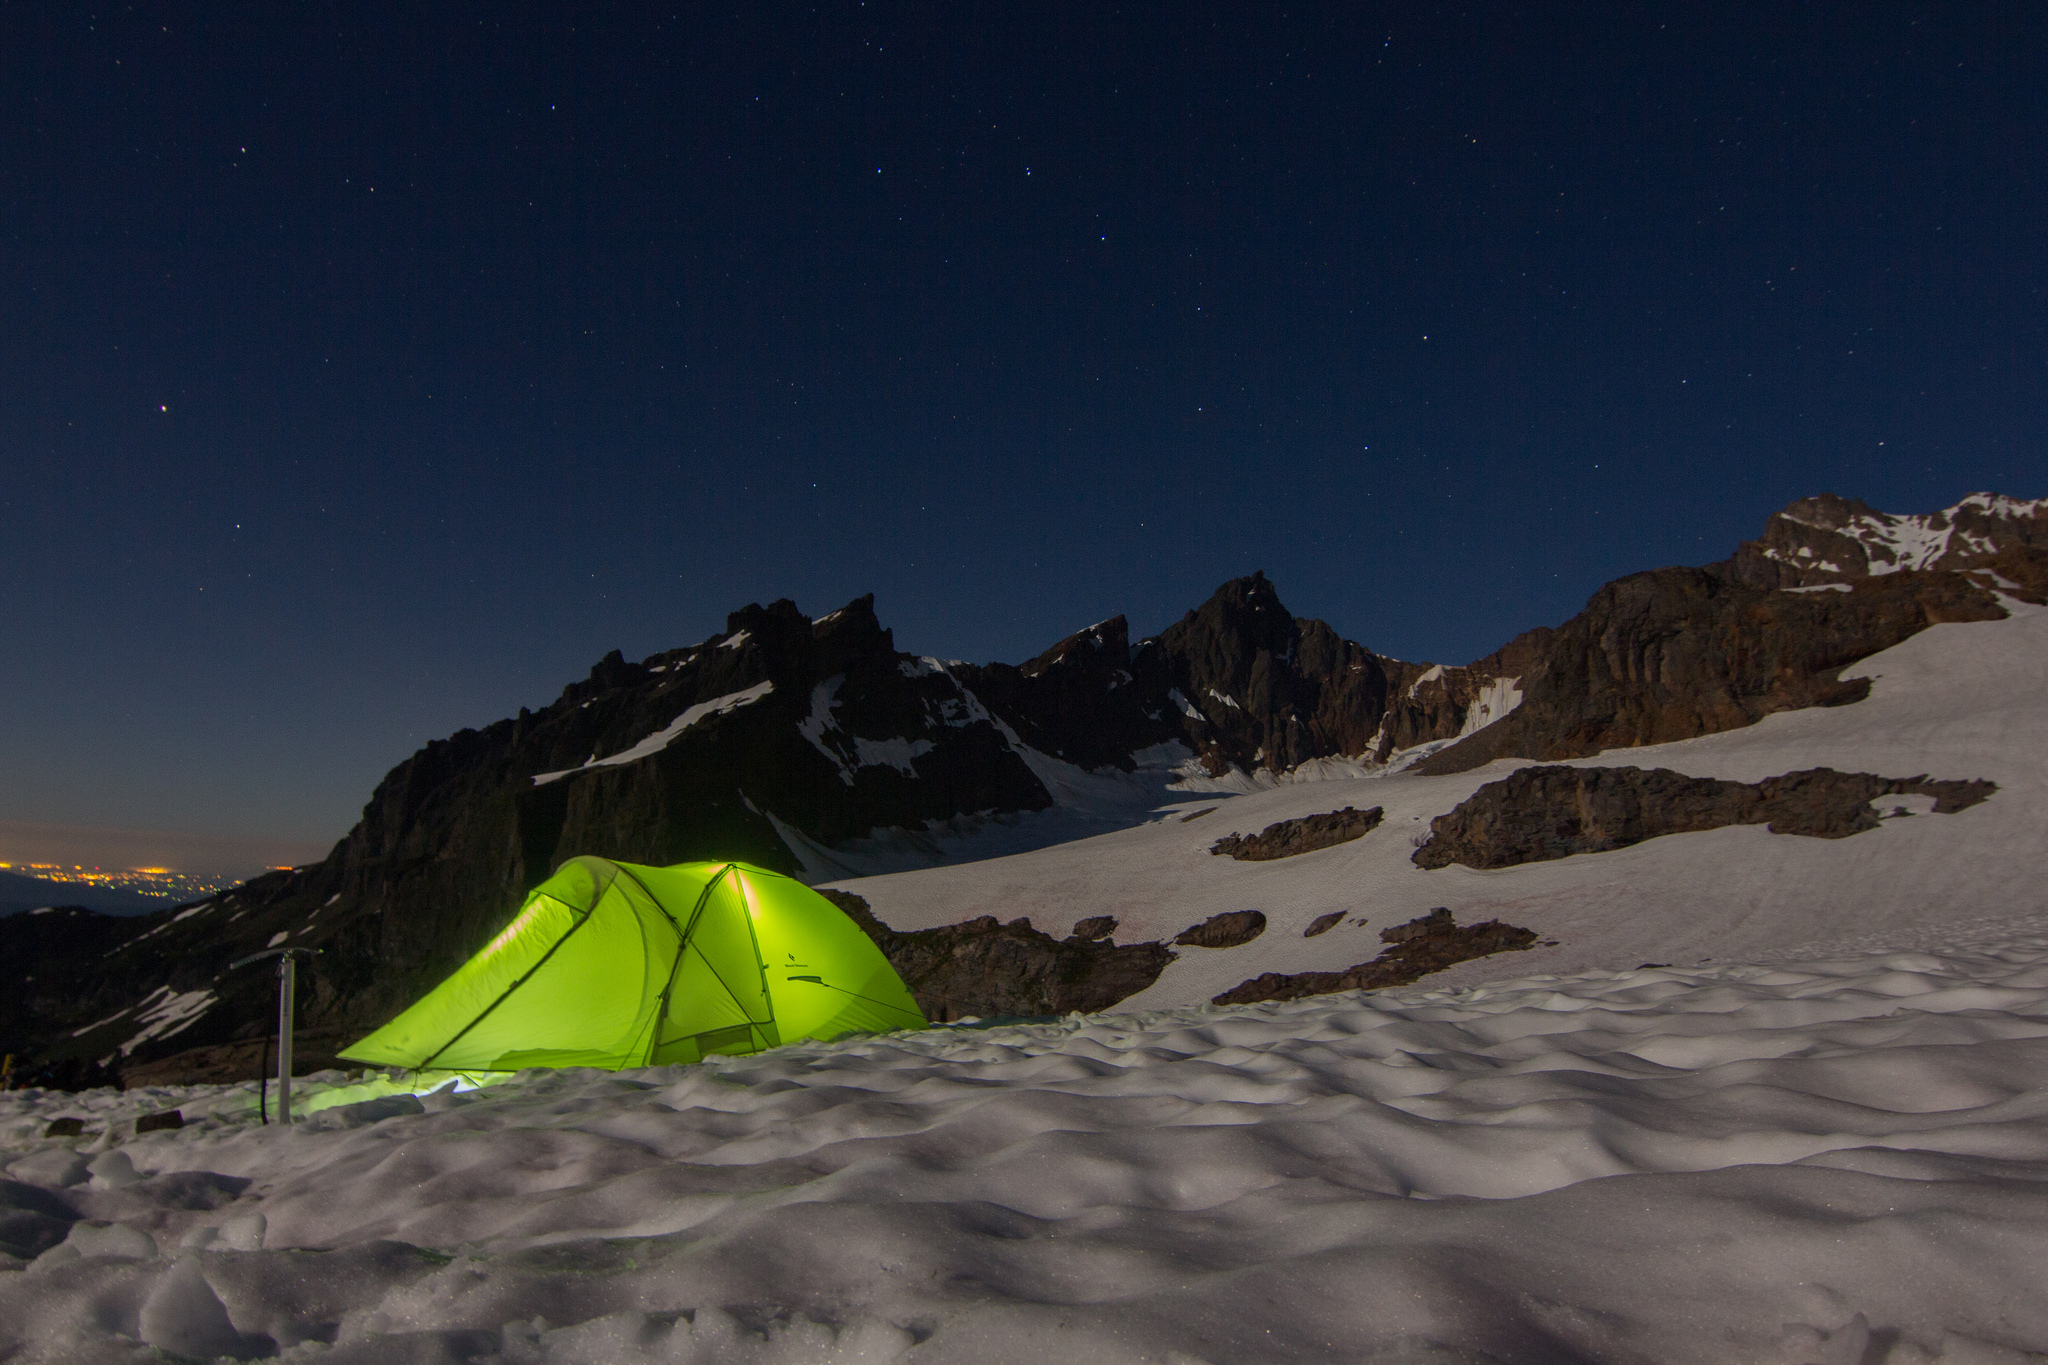 Mt. Baker - Illuminated tent